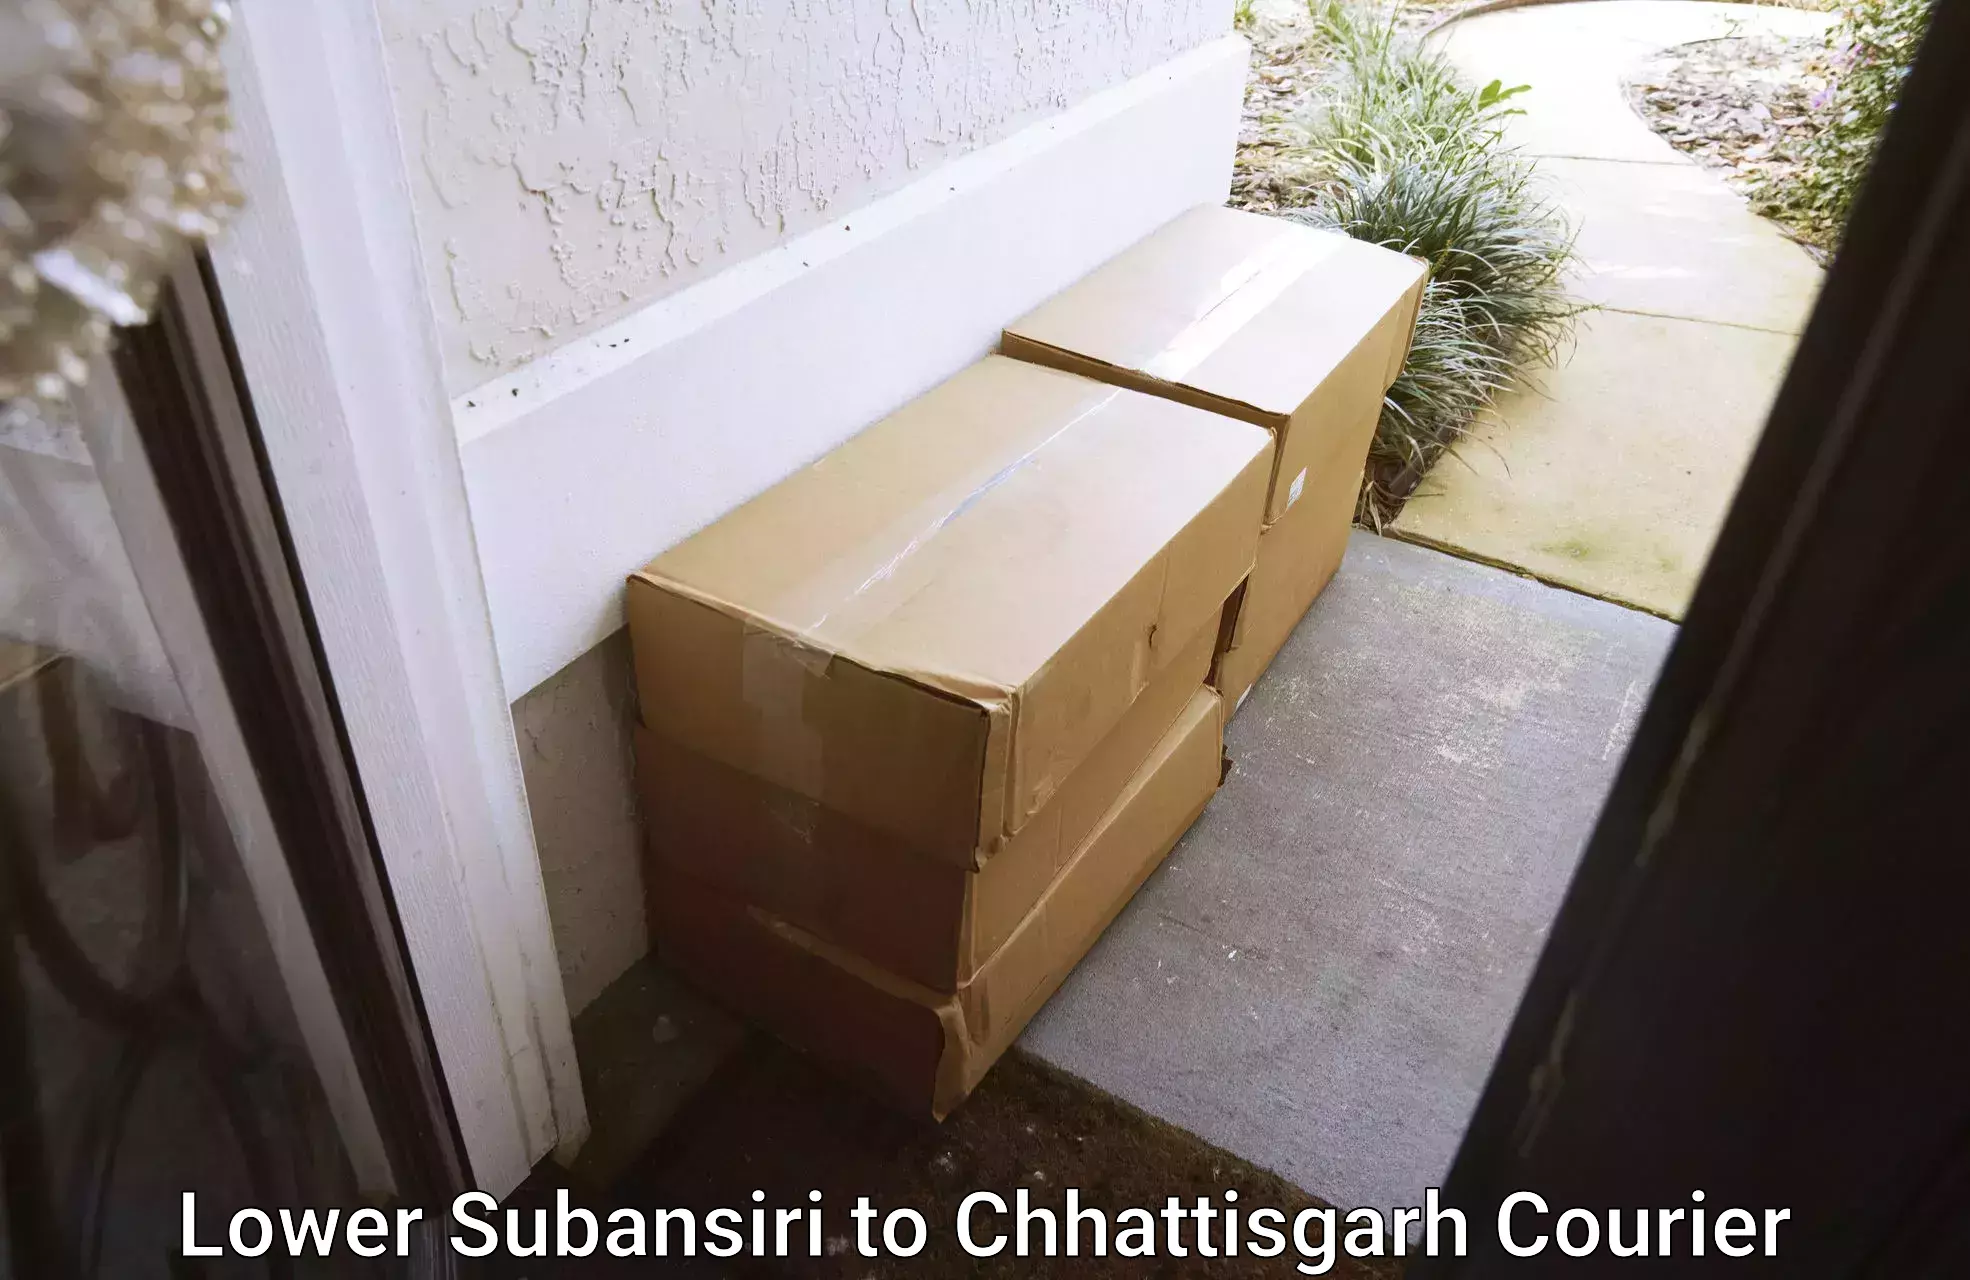 Bulk order courier Lower Subansiri to Raigarh